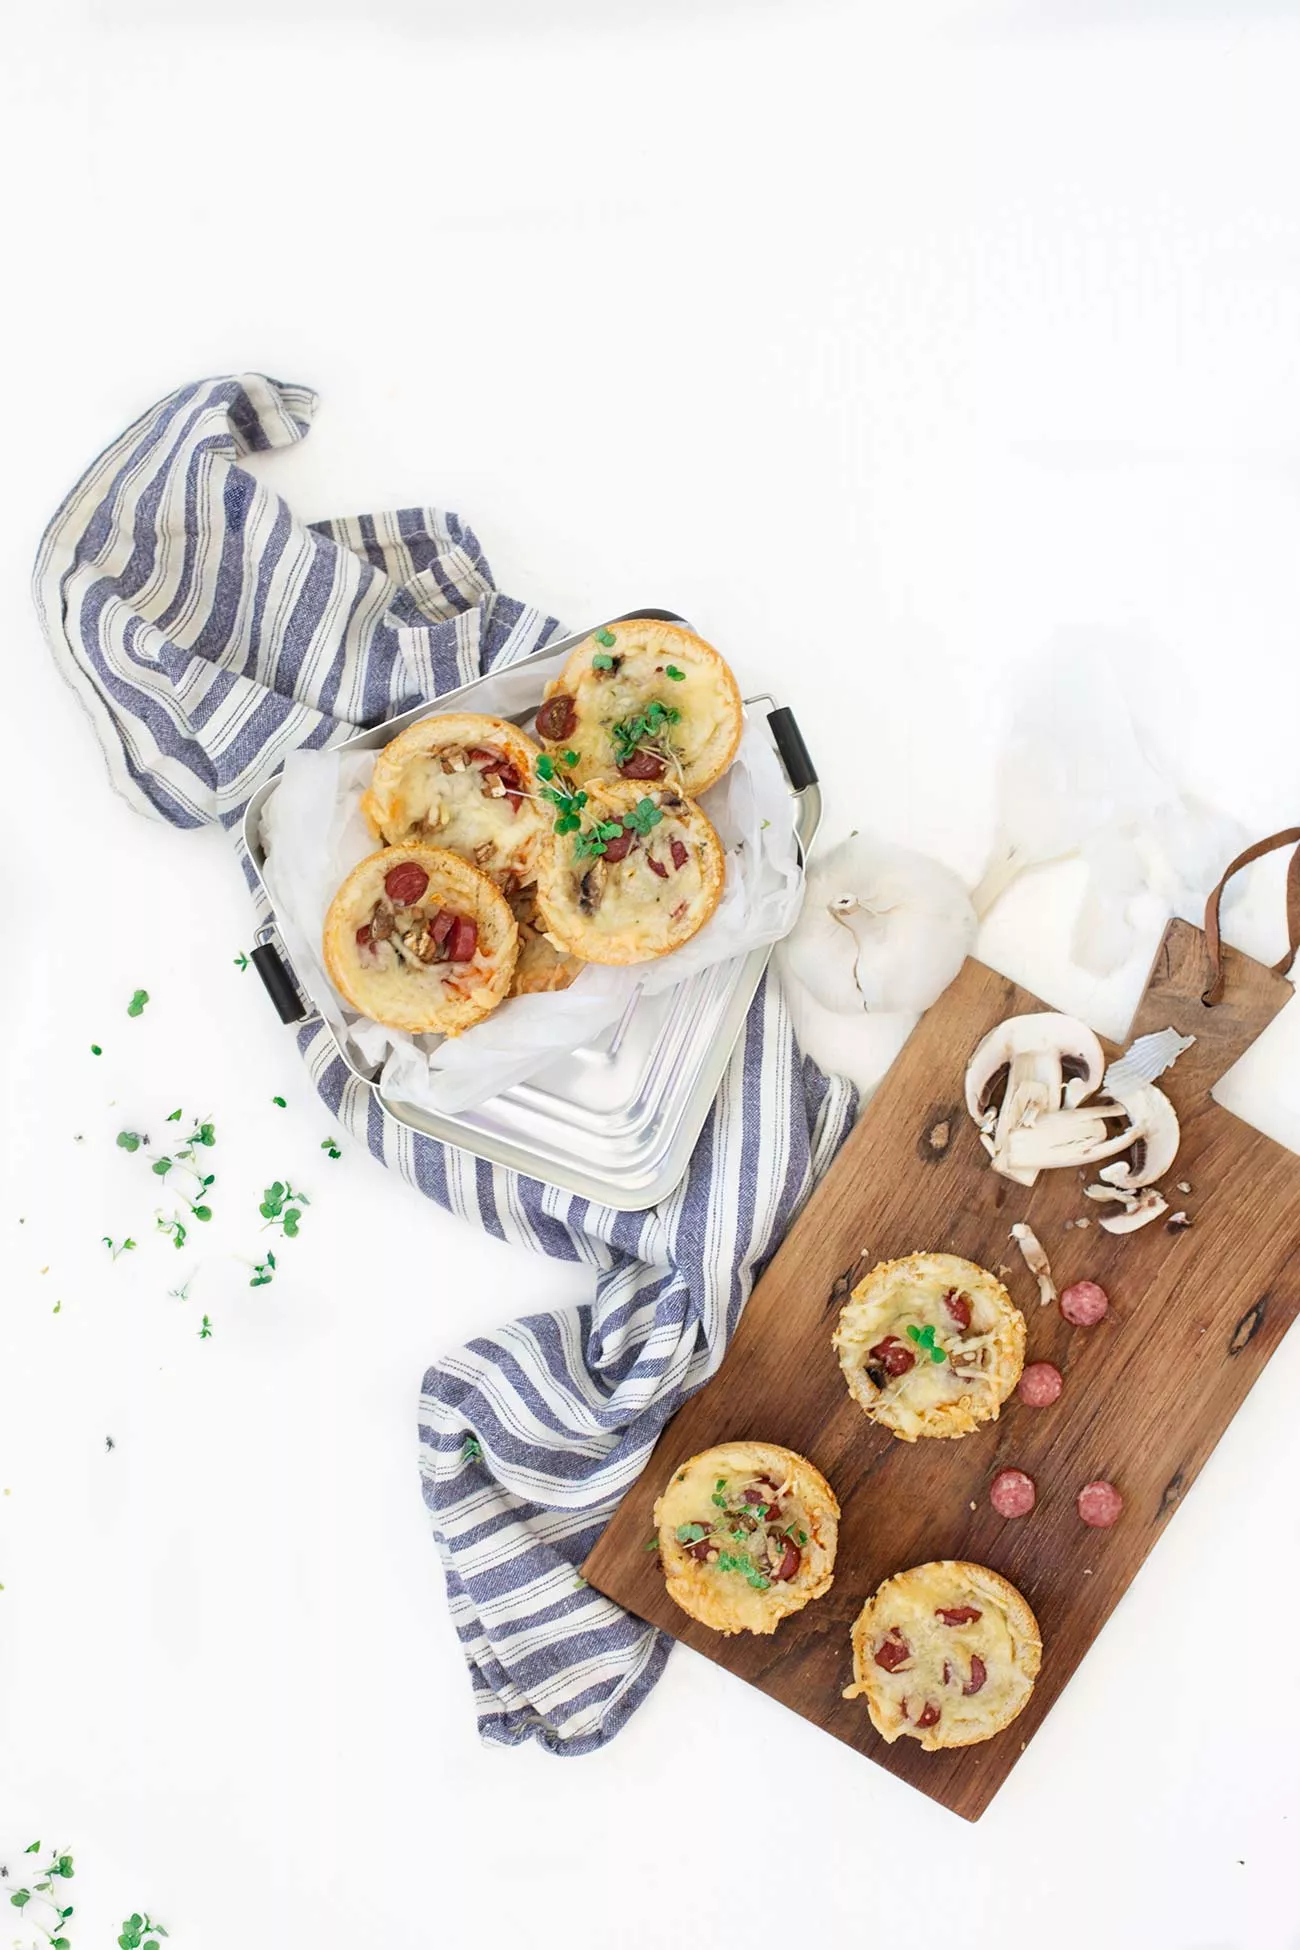 Schnell gemachte Knoblauch-Pizzabrote  Mit einem „Haps“ sind sie im Mund. Köstlich! Die perfekten „Kleinen“ für die Brotbox oder für den Grillabend. Knoblauchbrot aus Toastbrot mit Deinen Lieblingszutaten.  